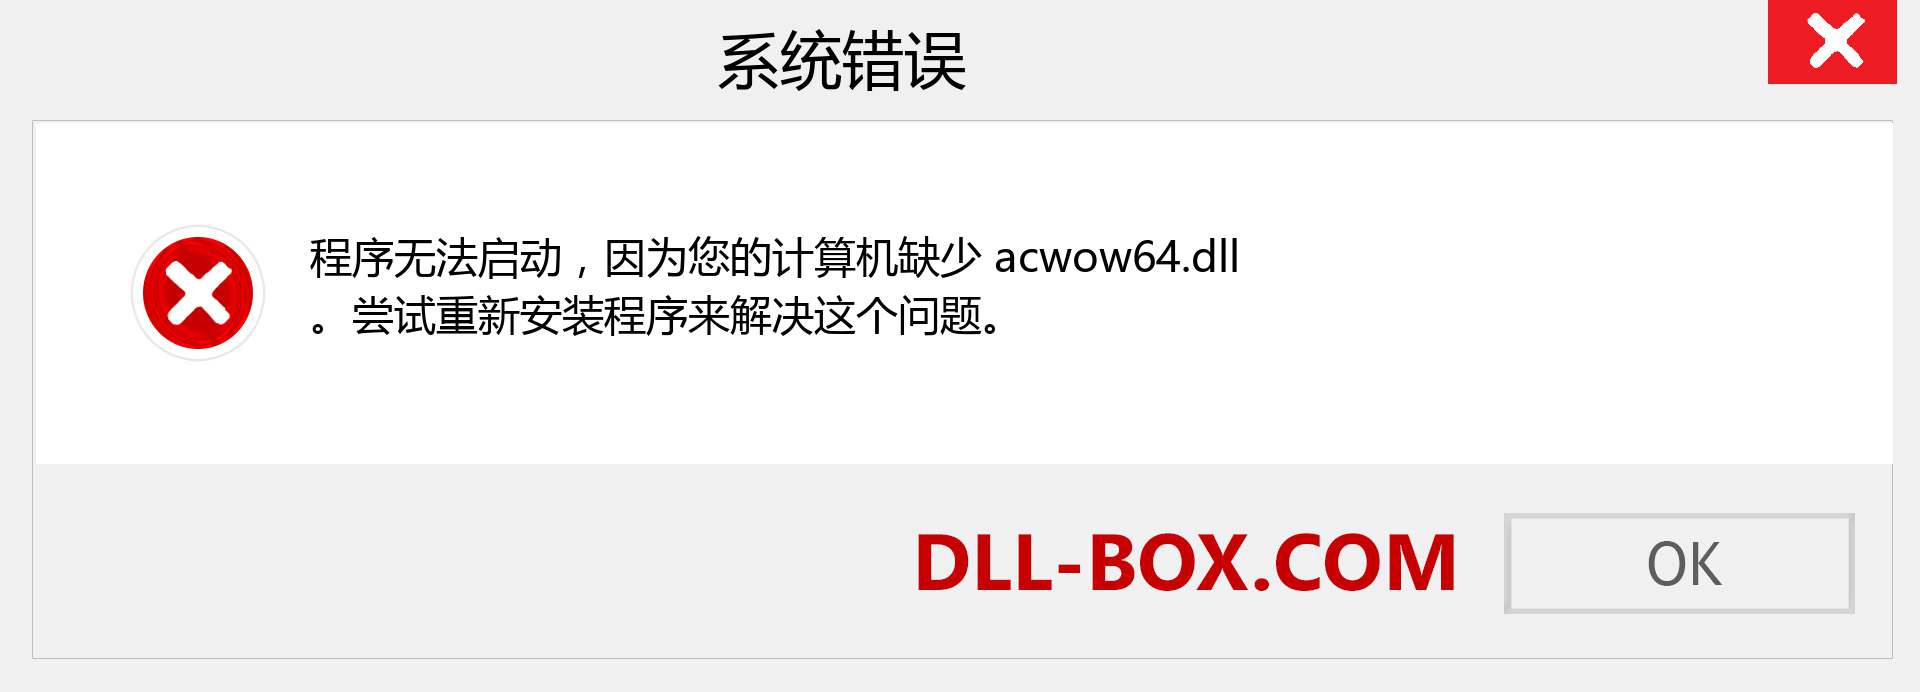 acwow64.dll 文件丢失？。 适用于 Windows 7、8、10 的下载 - 修复 Windows、照片、图像上的 acwow64 dll 丢失错误